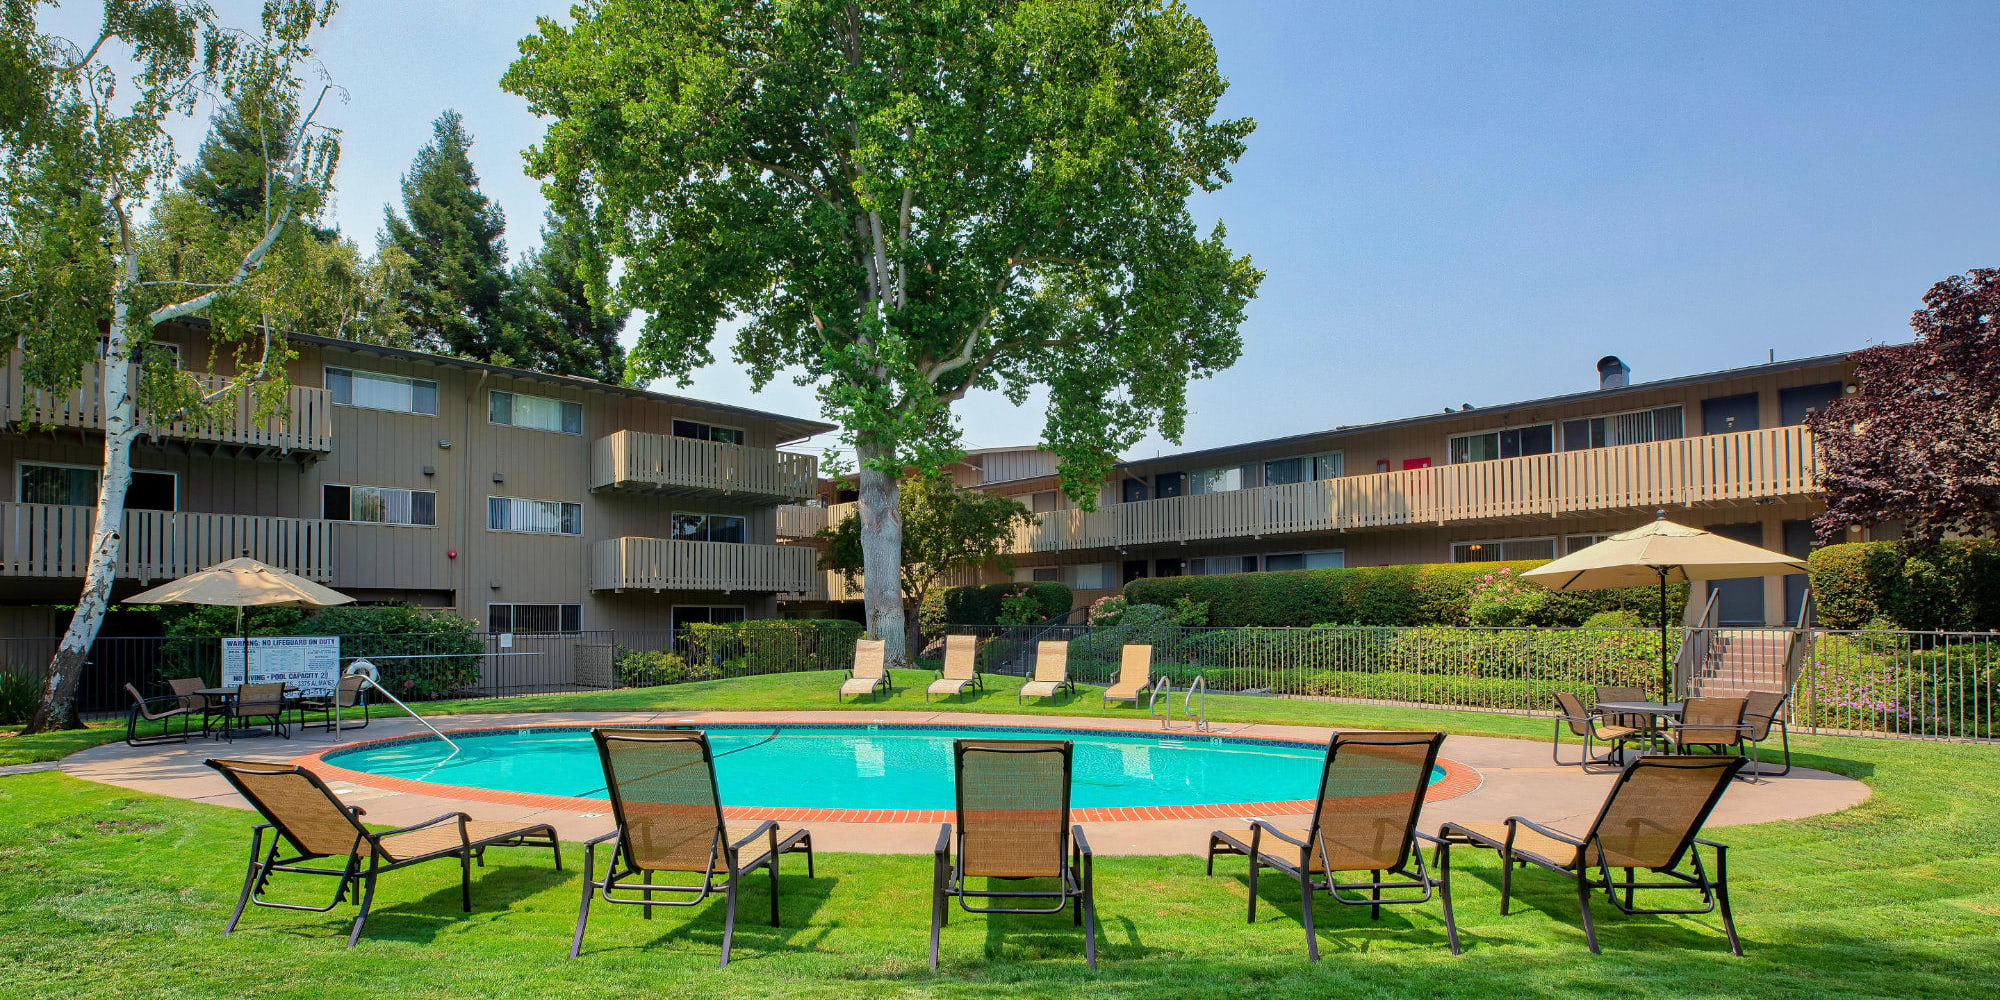 Pool area at Stanford Villa in Palo Alto, California